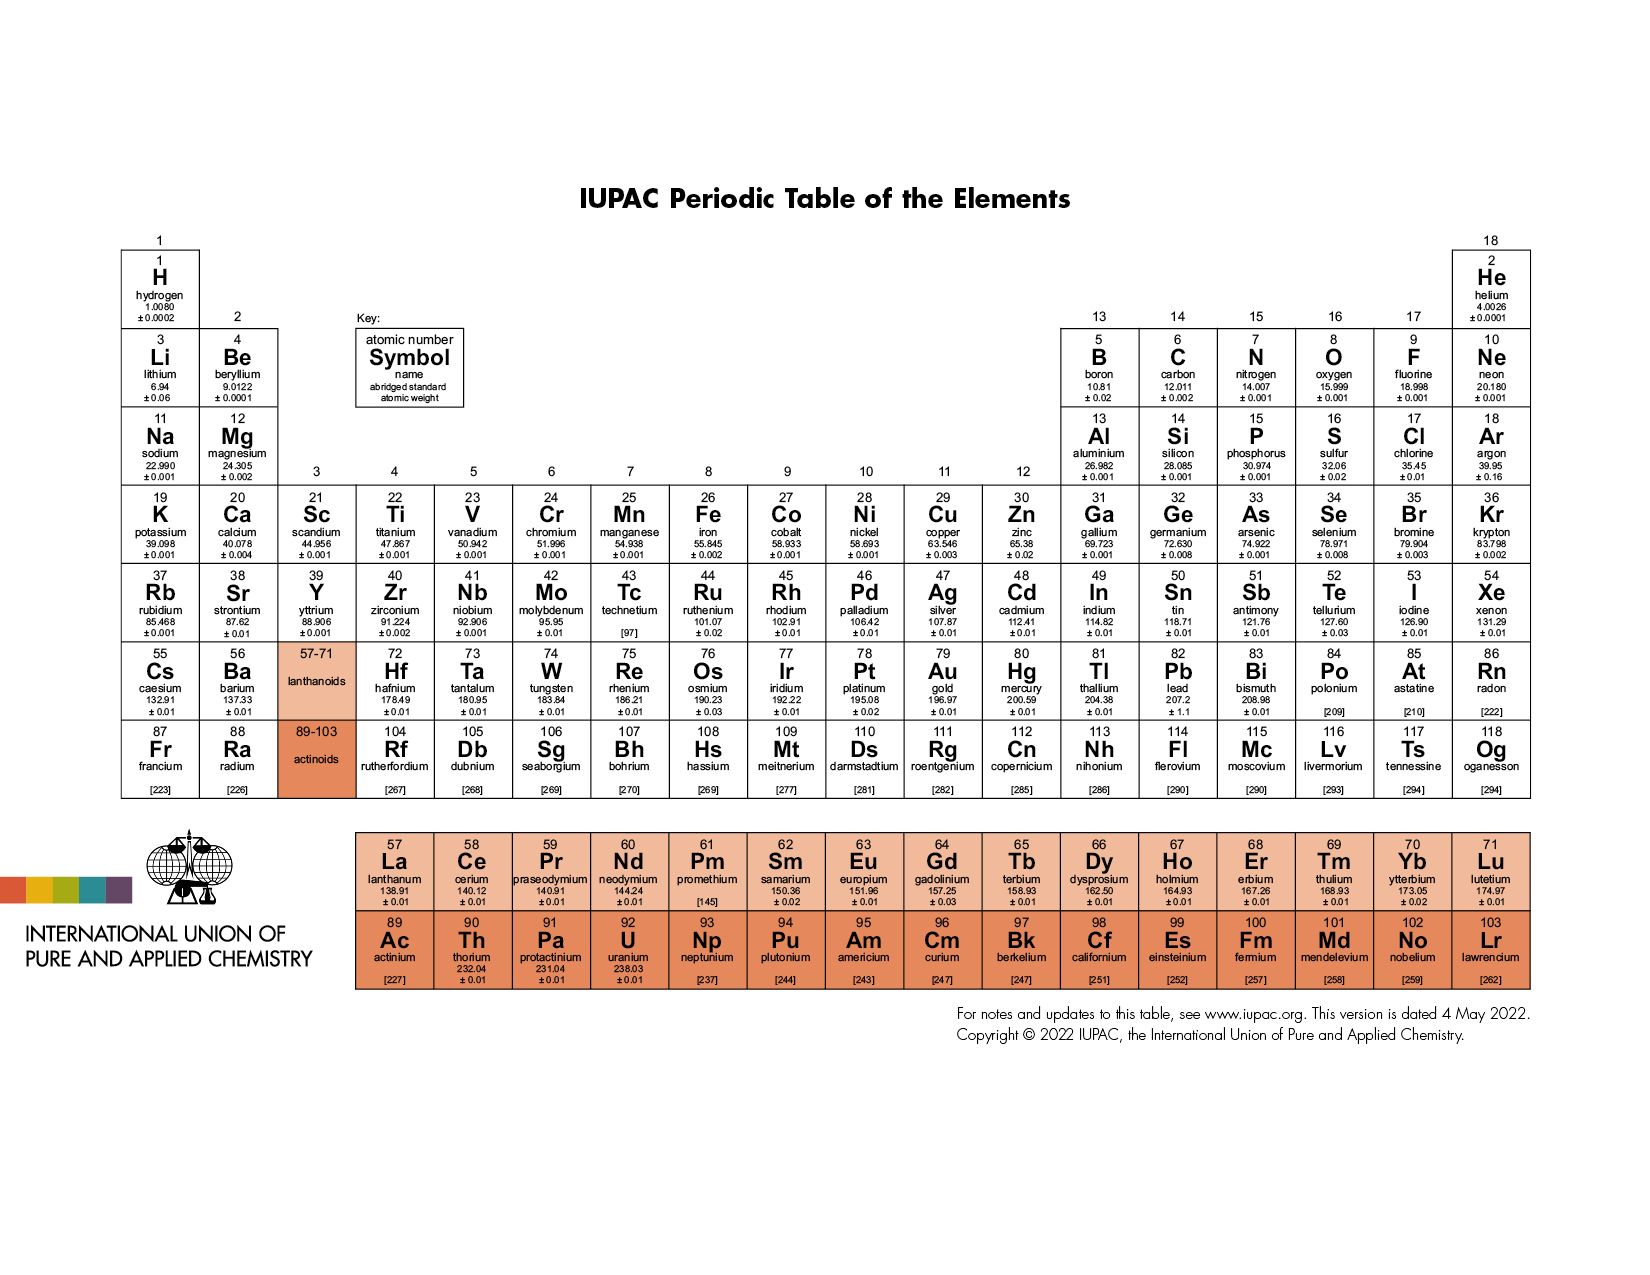 IUPAC_Periodic_Table_150-04May22